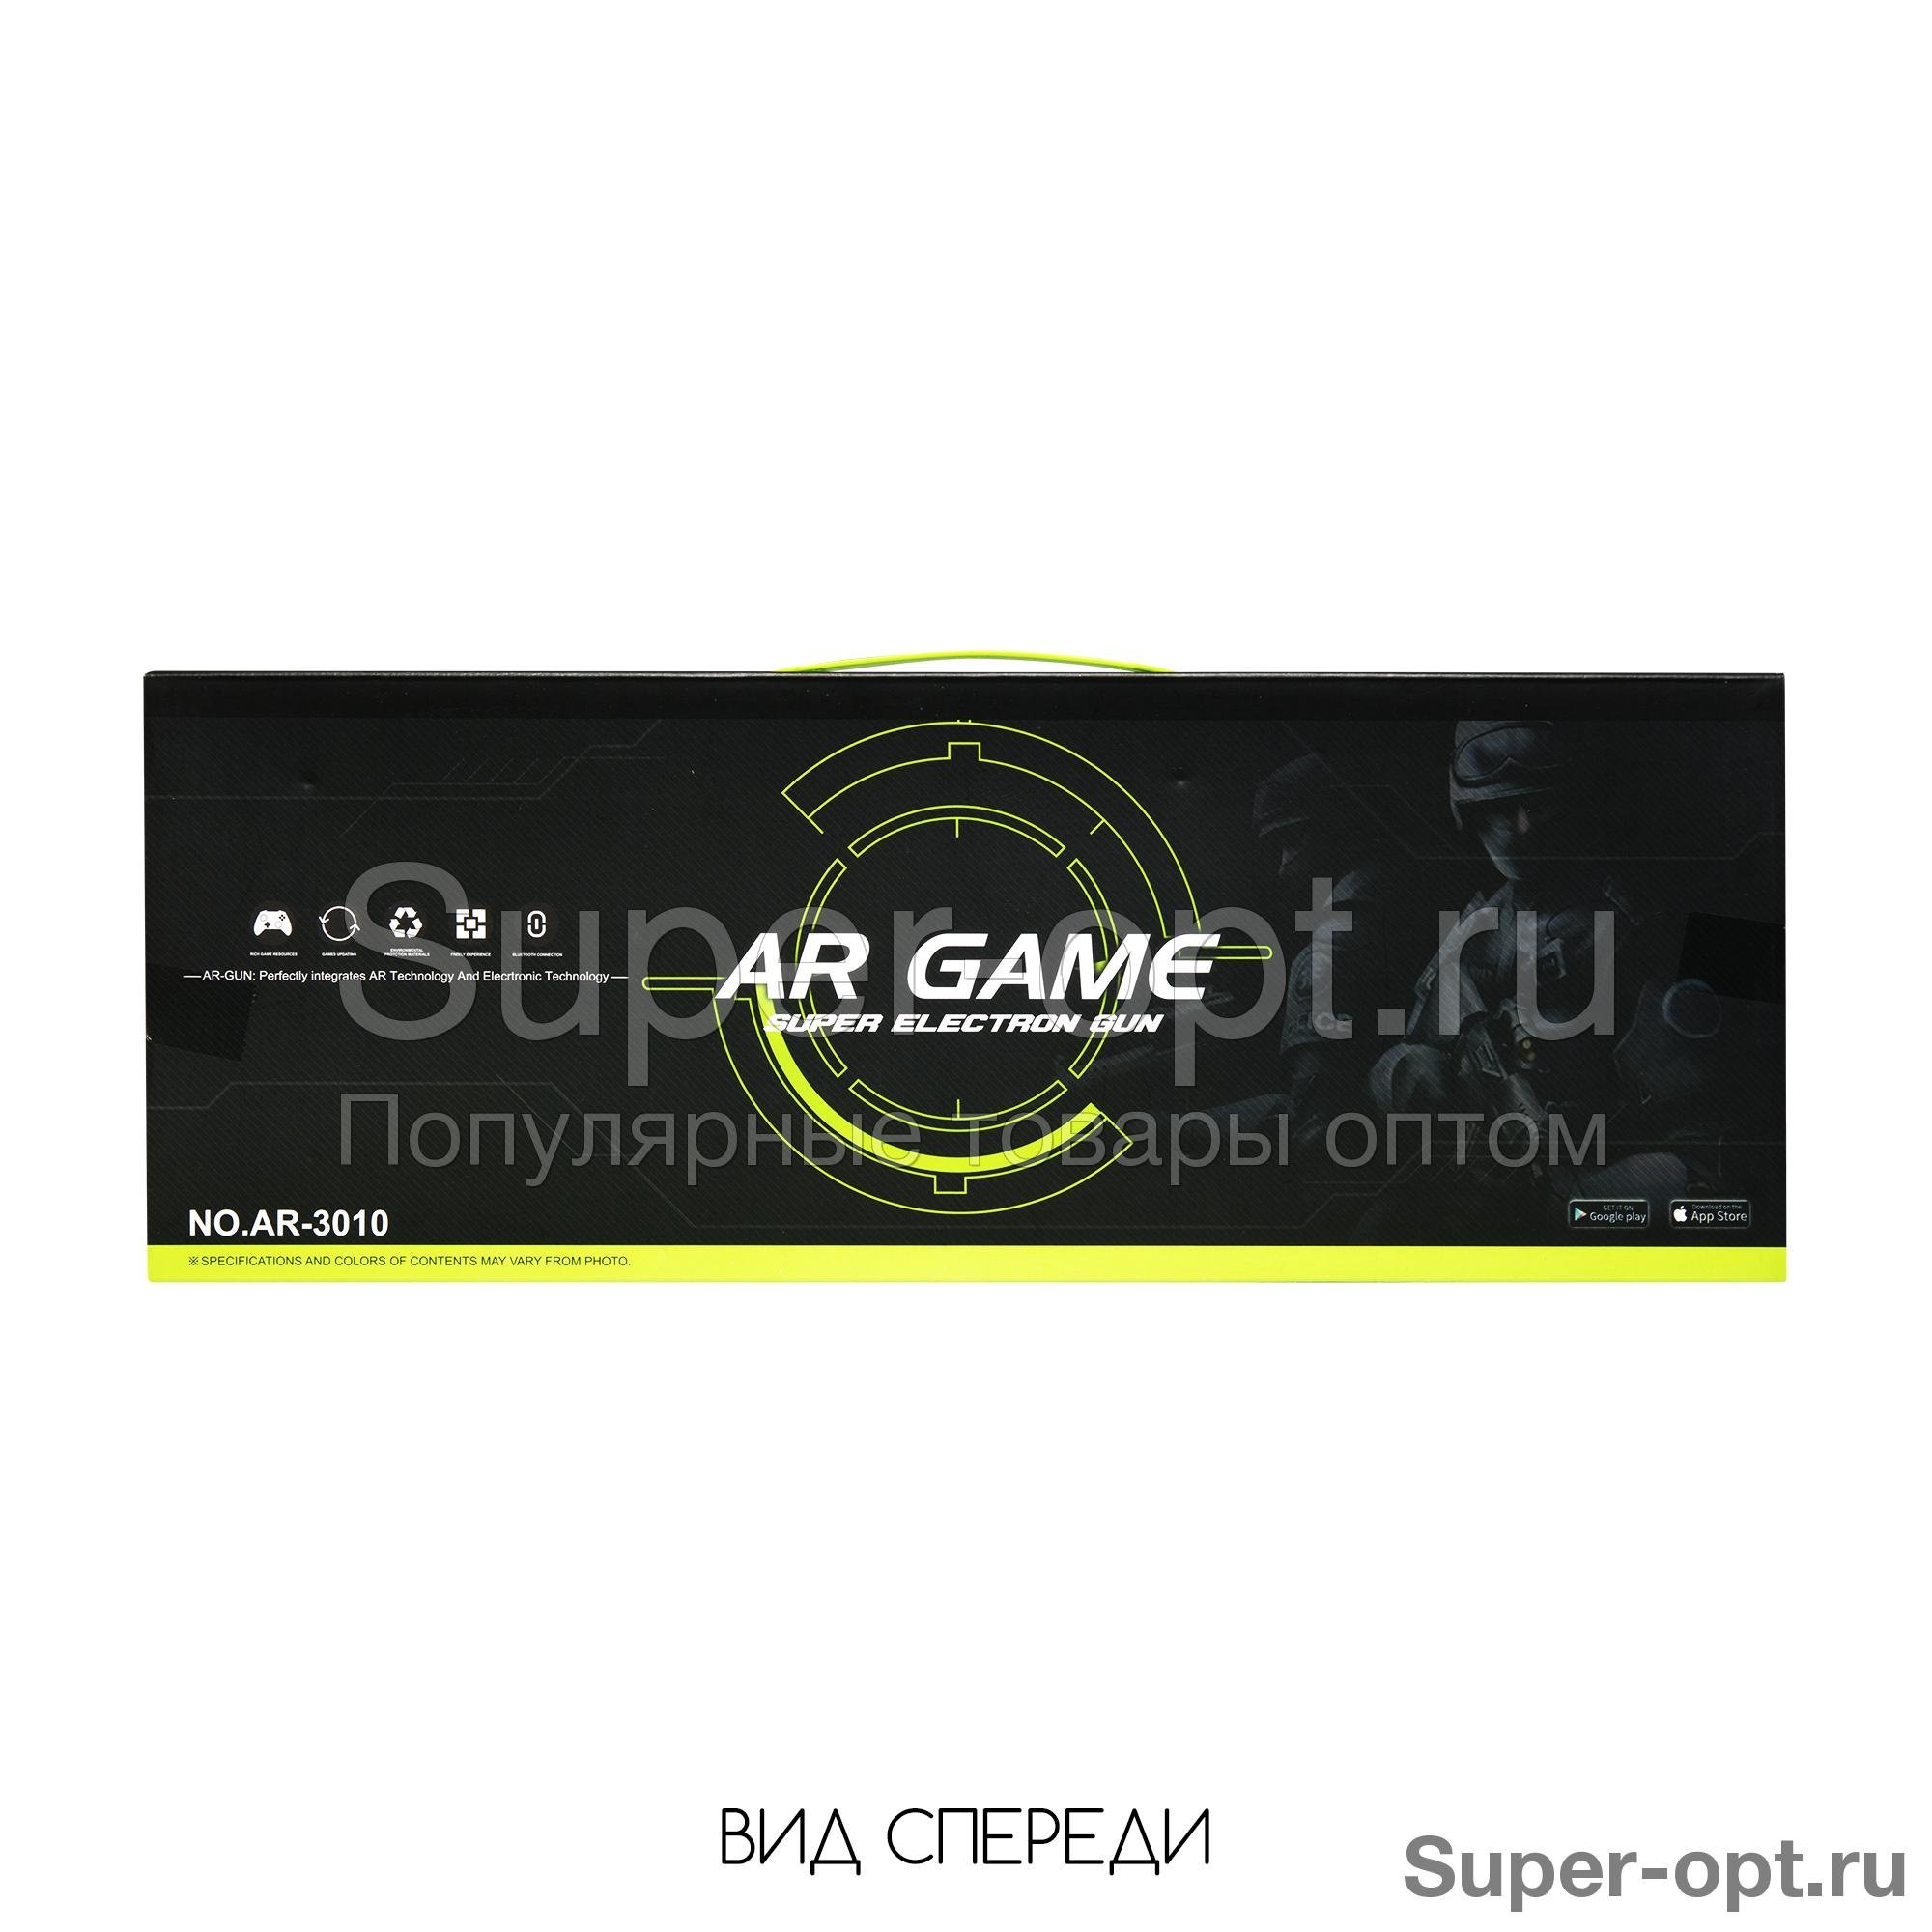 Автомат AR Game Super Electron Gun c дополненной реальностью